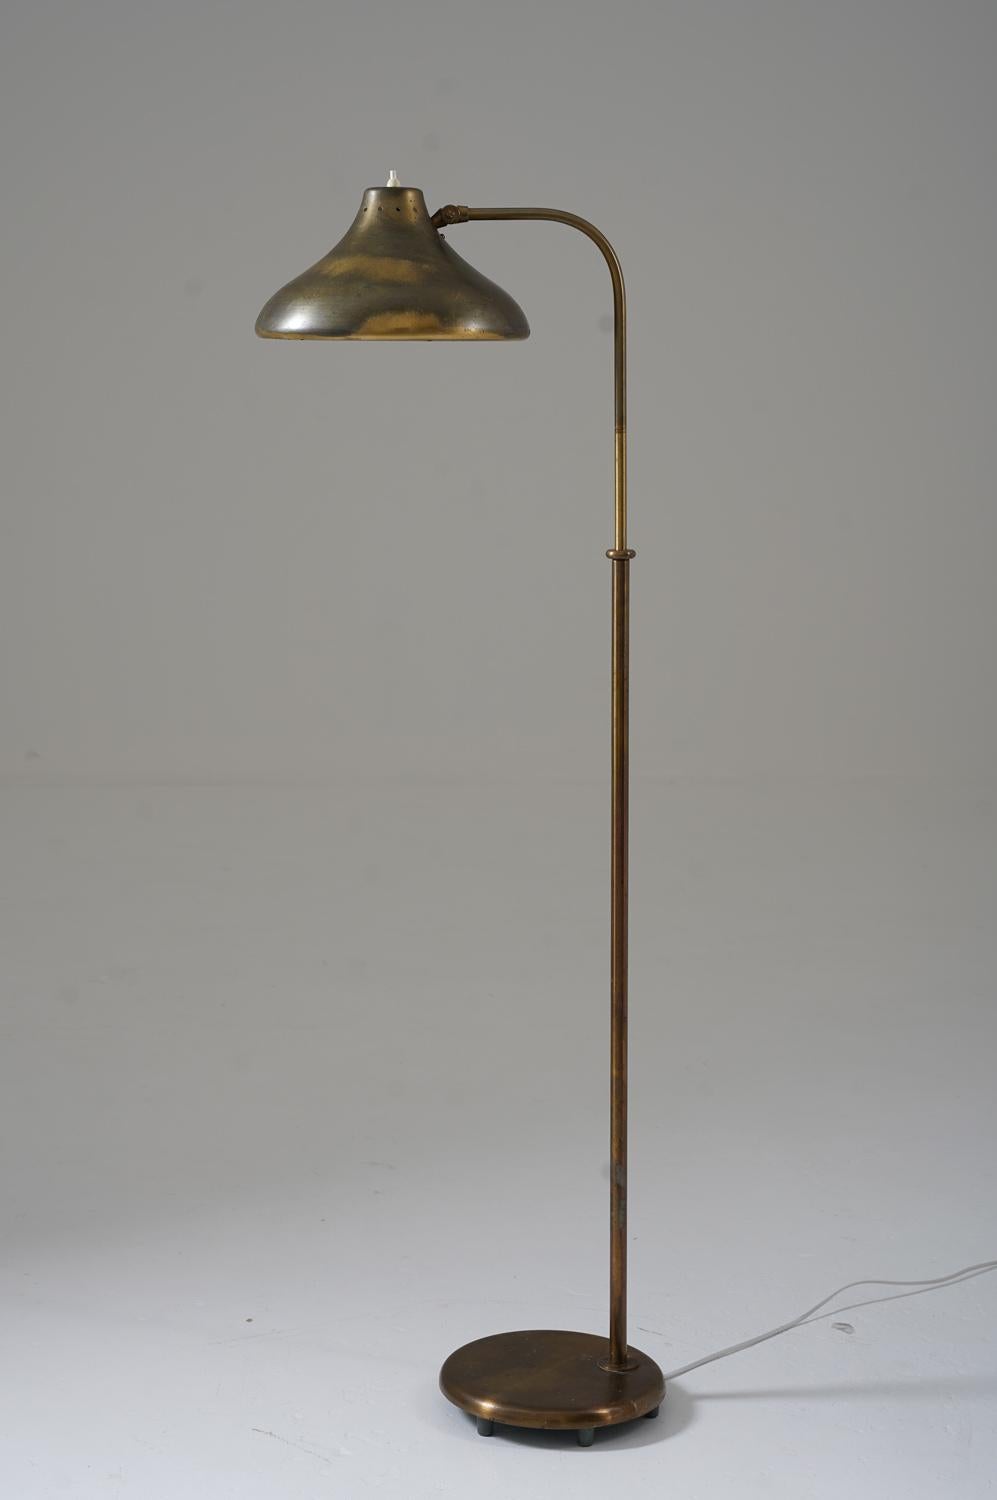 Seltene schwedische moderne Stehleuchte Modell 5570 von Böhlmarks, Schweden, 1930er Jahre. 
Diese Lampe ist aus Messing gefertigt. Der Schirm ist an einem schwenkbaren Arm befestigt, der in der Höhe verstellbar ist (125-143cm, 49-56